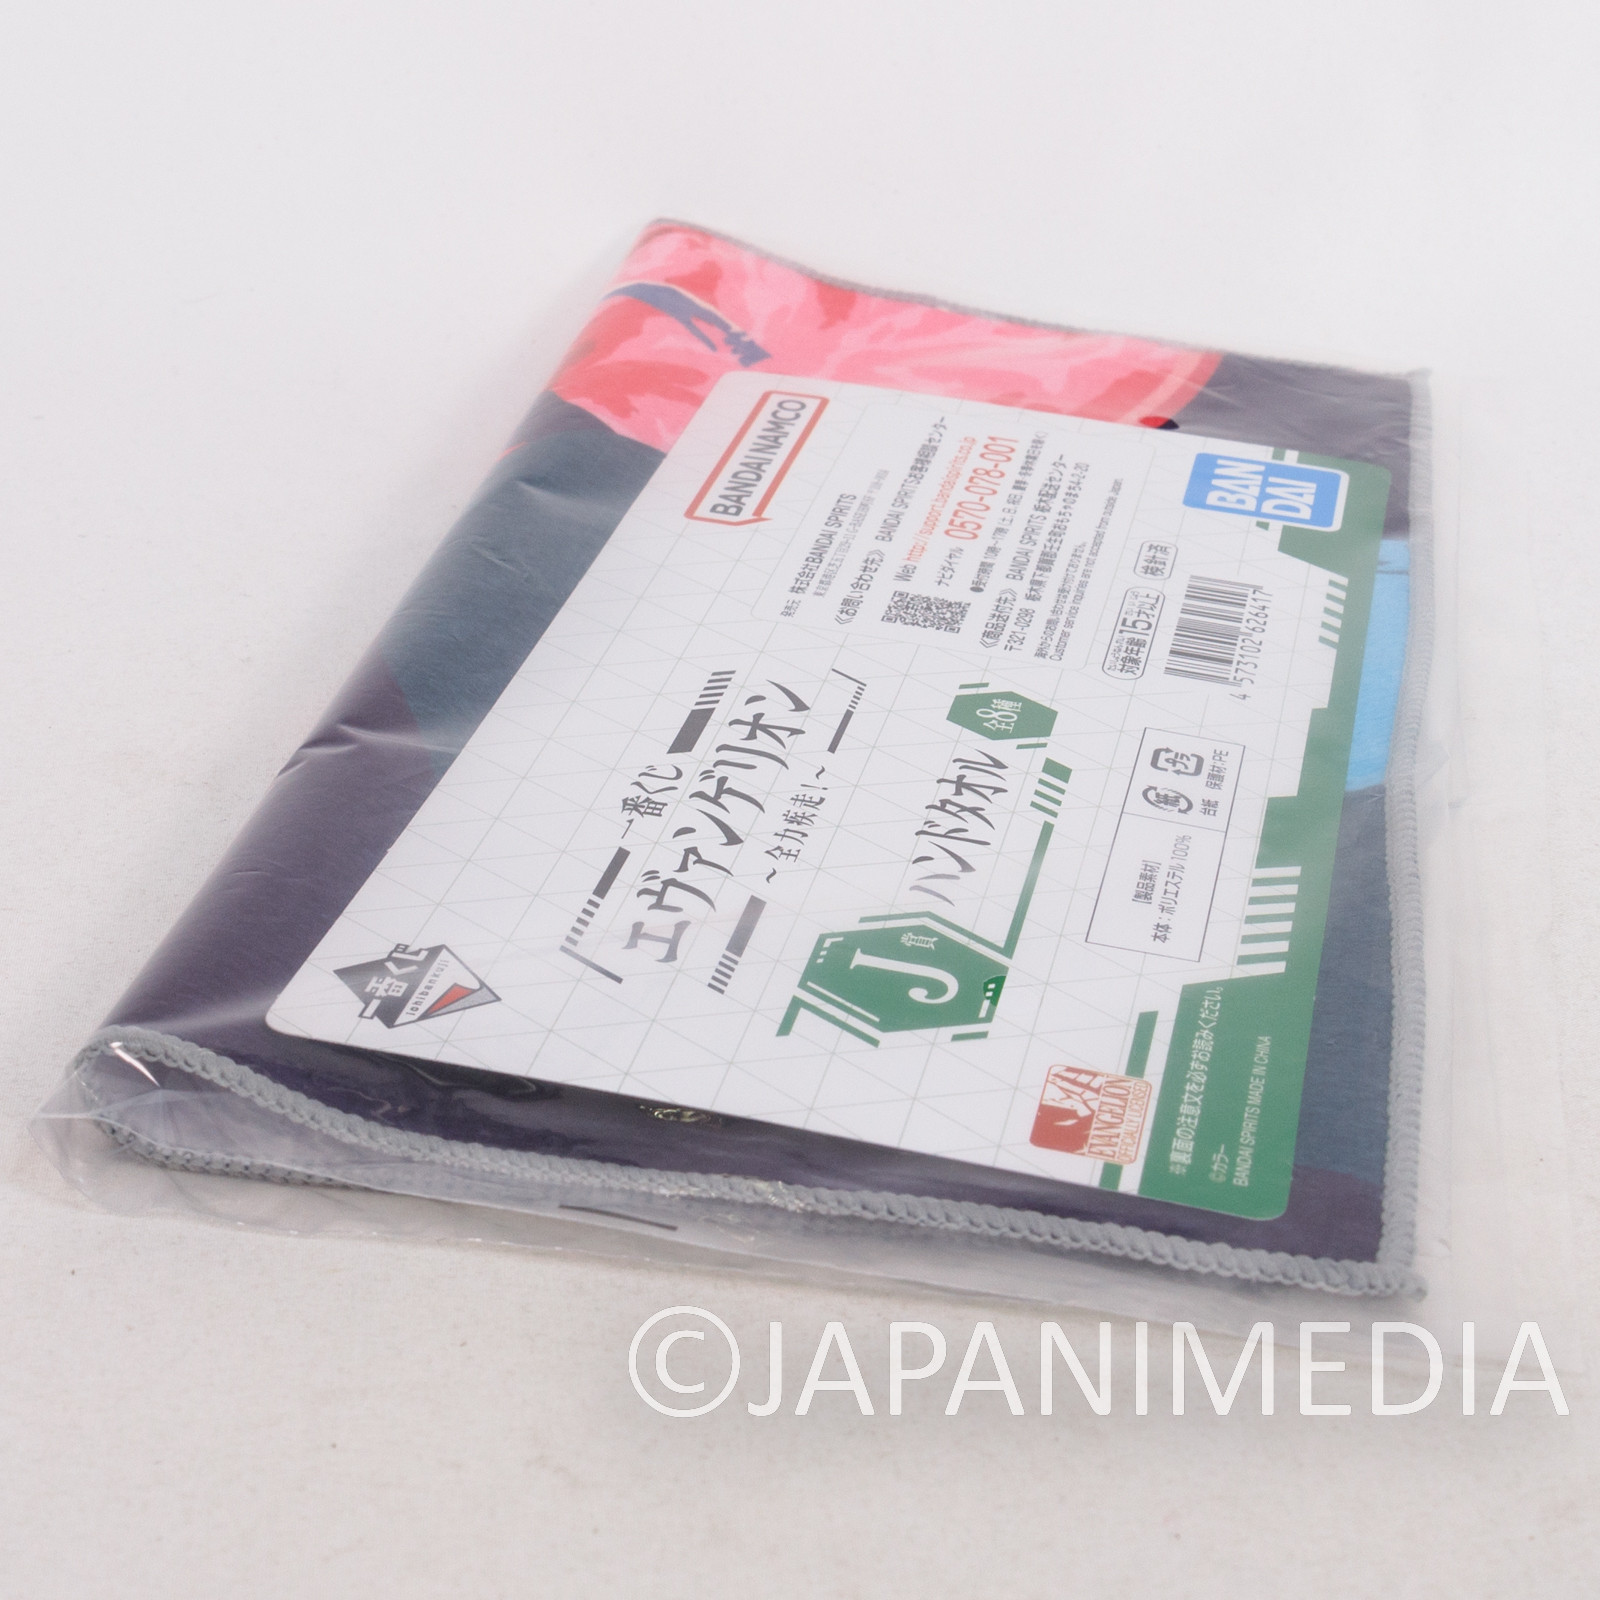 Evangelion Kaworu Nagisa Hand Towel 10x10inch BANDAI JAPAN